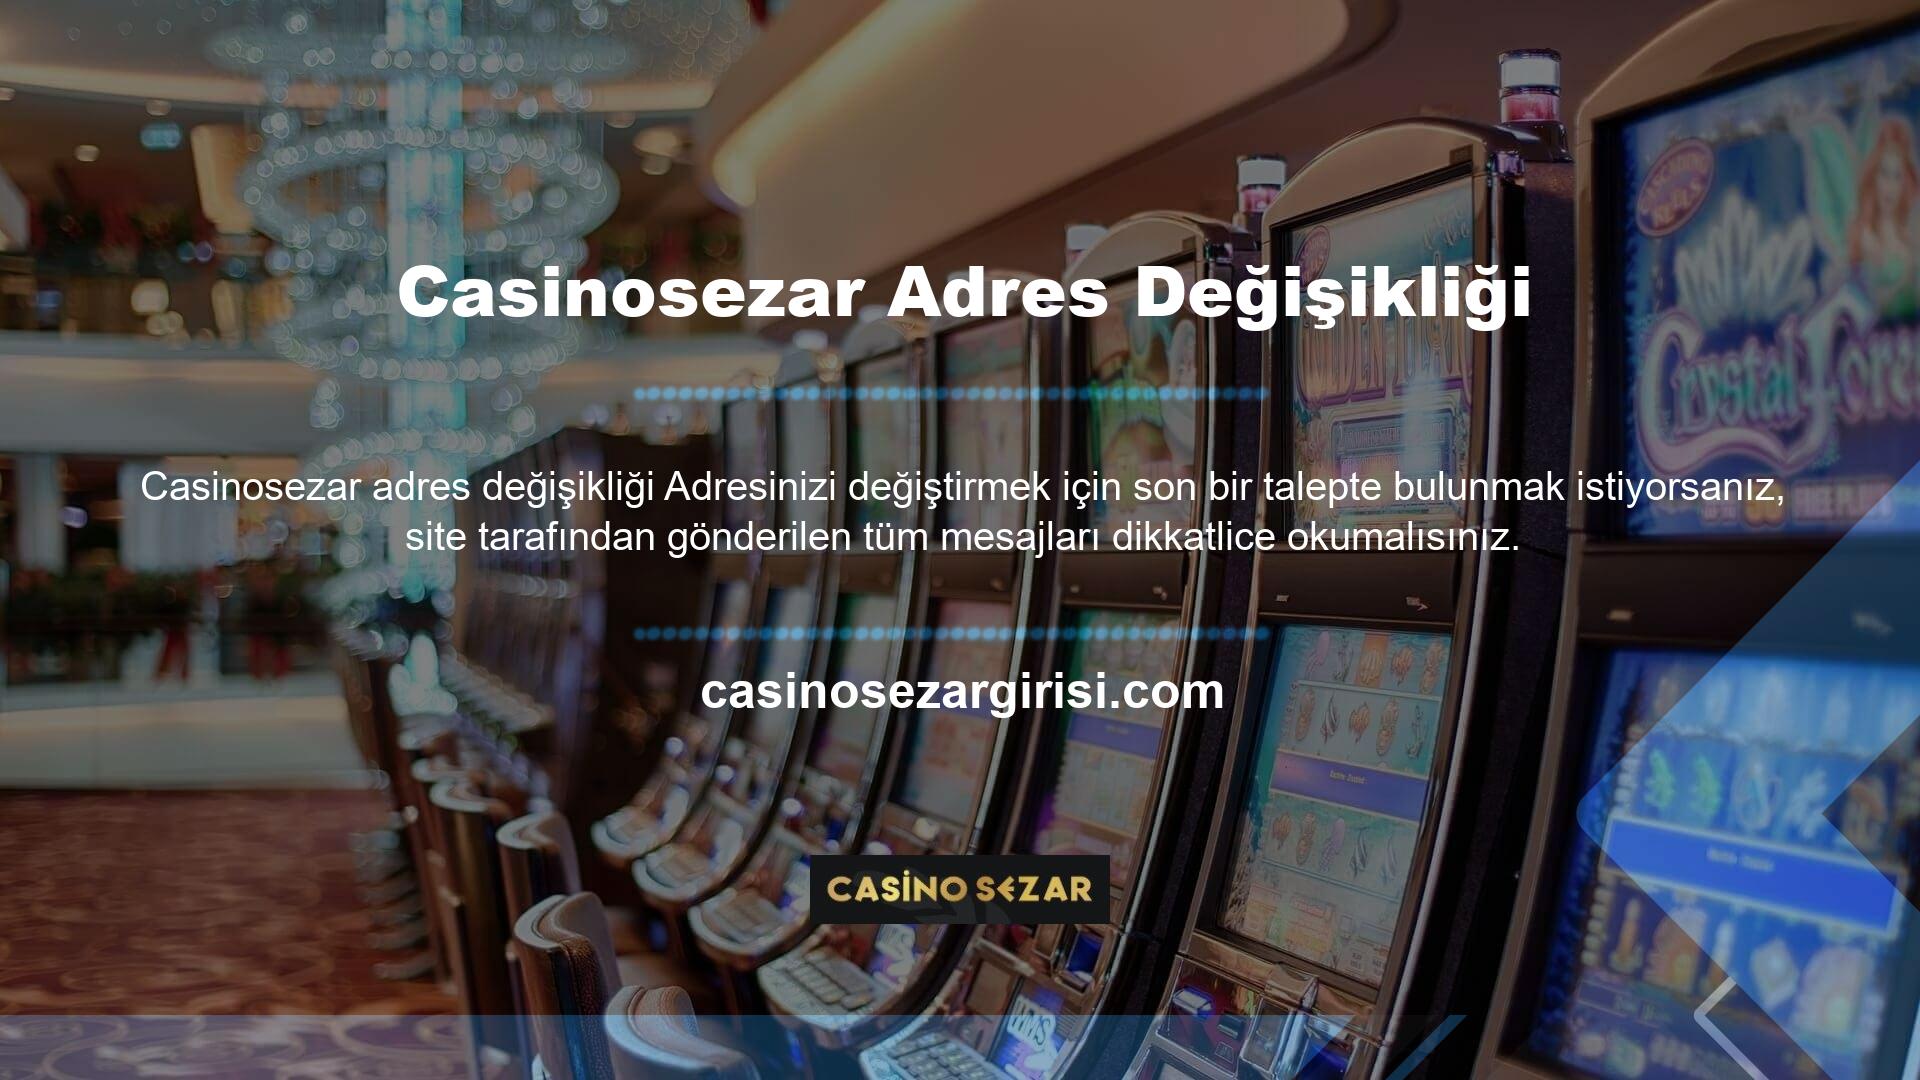 Birçok kullanıcı, cep telefonlarına gönderilen Casinosezar markalı e-posta ve SMS'leri tam olarak kontrol etmemektedir